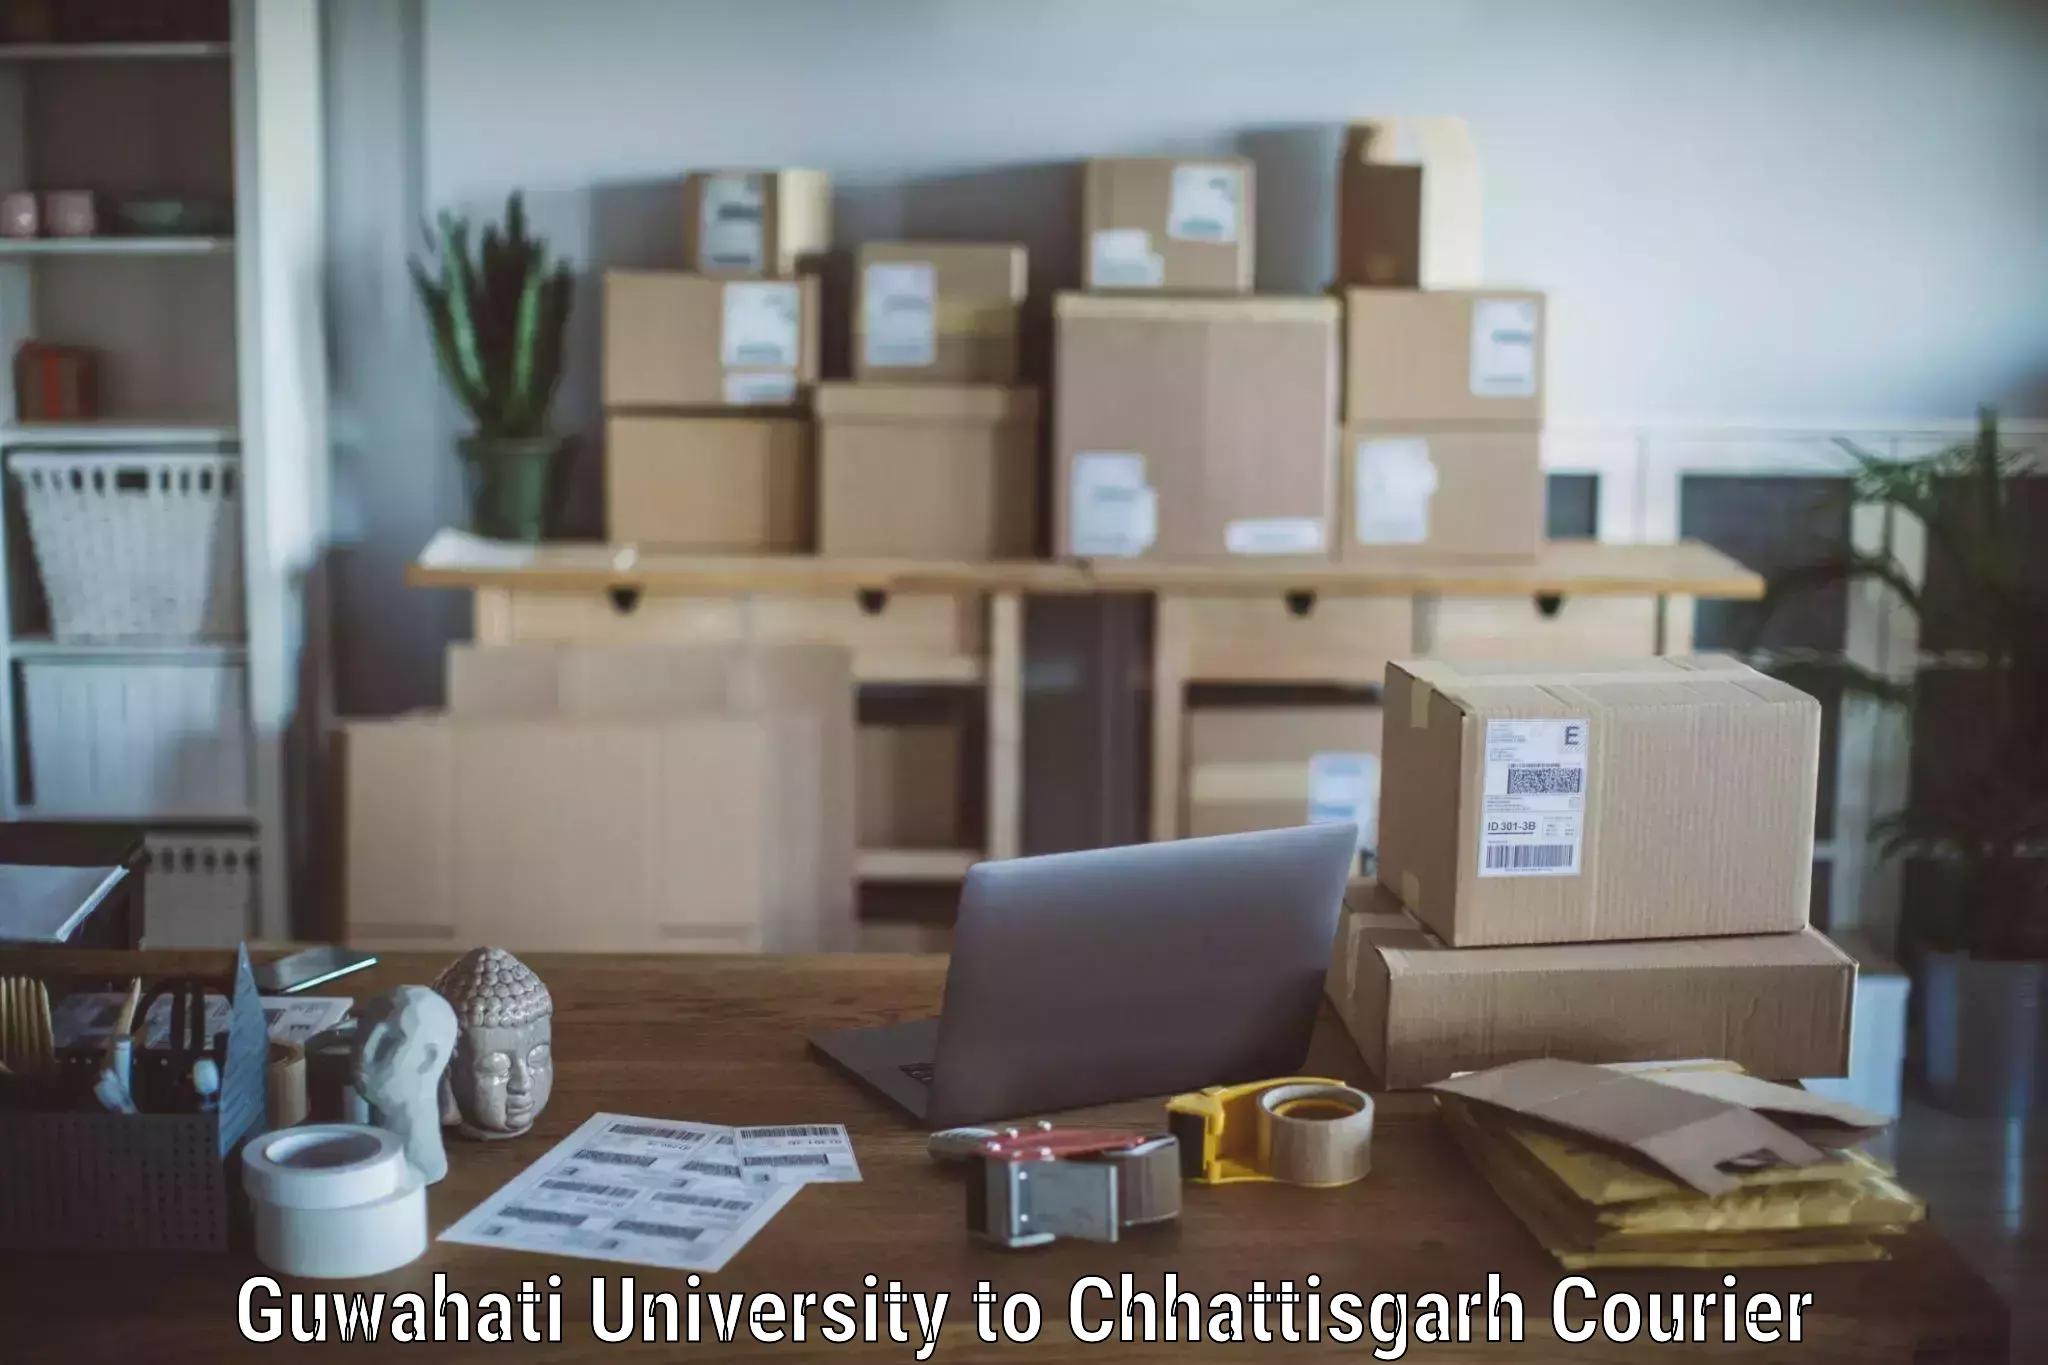 Professional moving company Guwahati University to Gariyaband